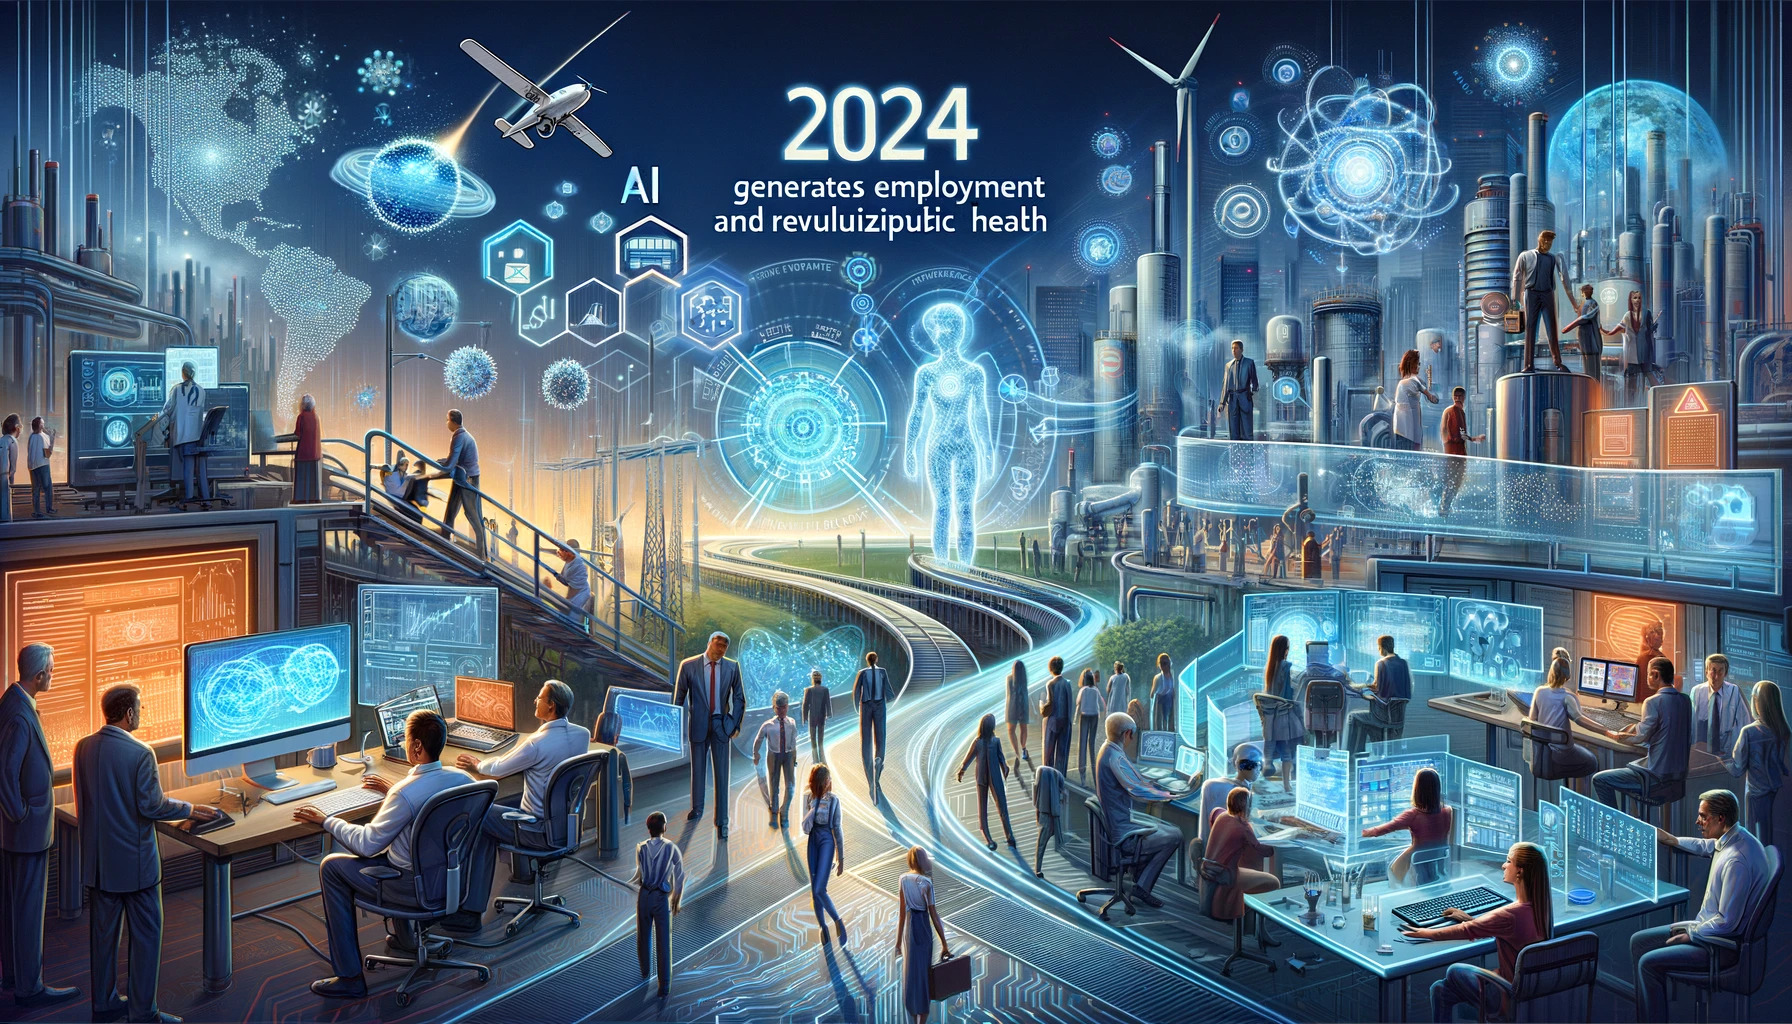 SAS predice para 2024 el impacto positivo de la IA en el empleo y la salud